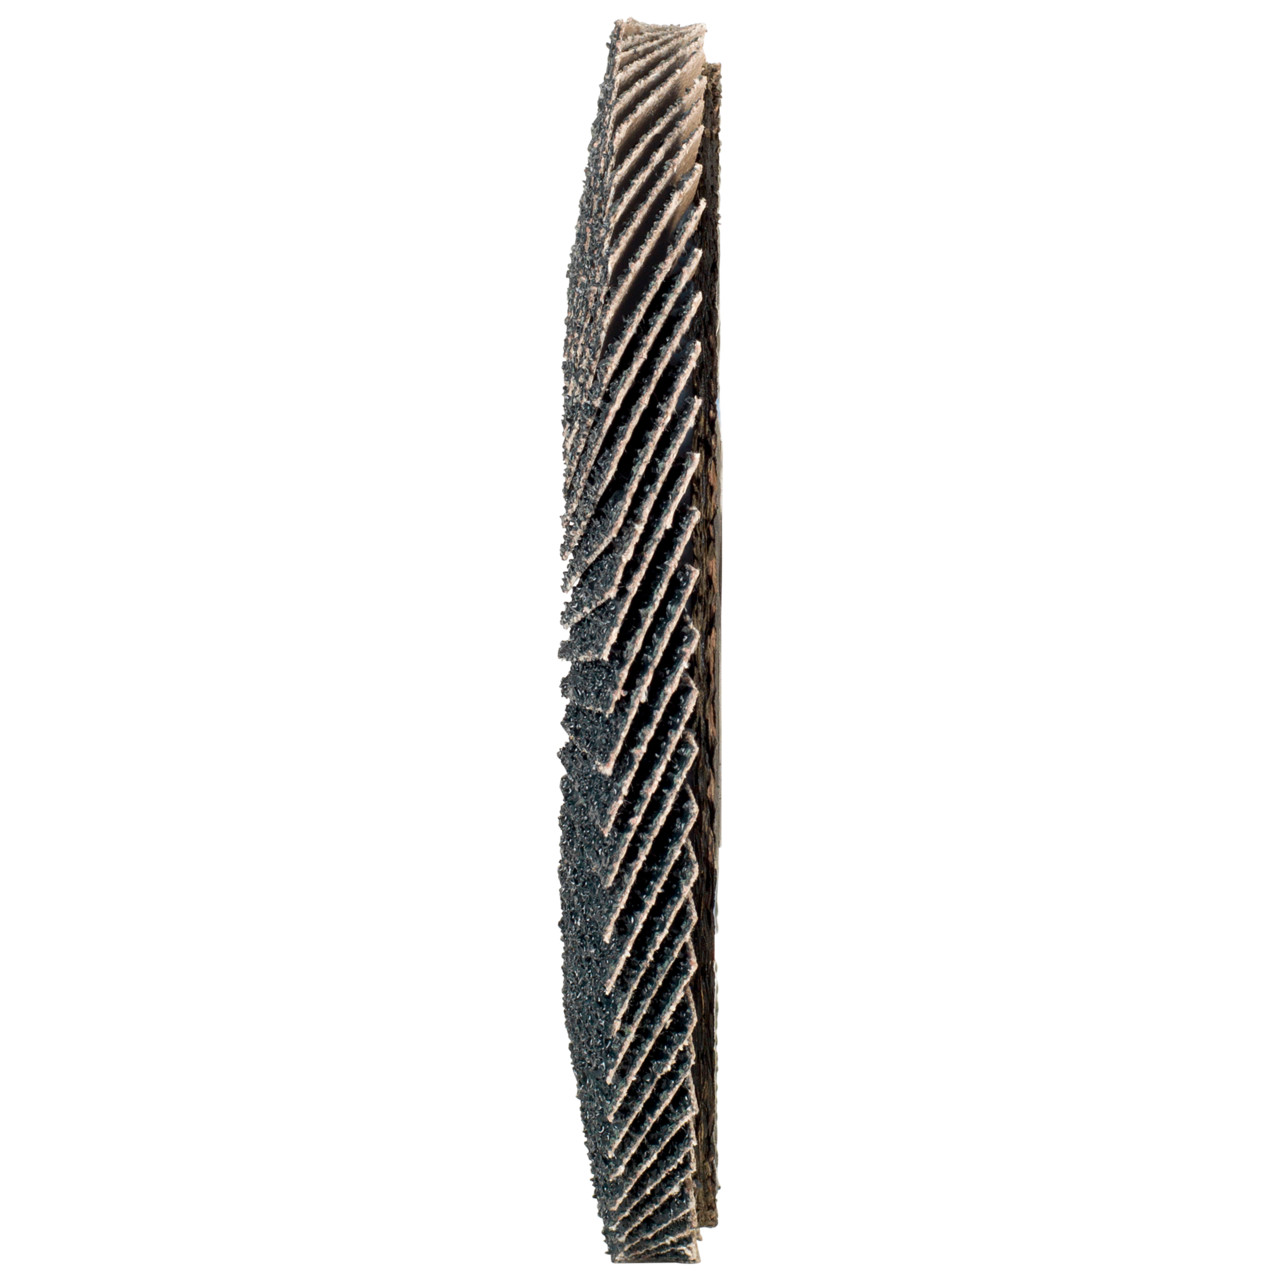 Rondella dentata Tyrolit DxH 178x22.2 2in1 per acciaio e acciaio inox, P80, forma: 27A - versione a gomito (versione con corpo portante in fibra di vetro), Art. 668673